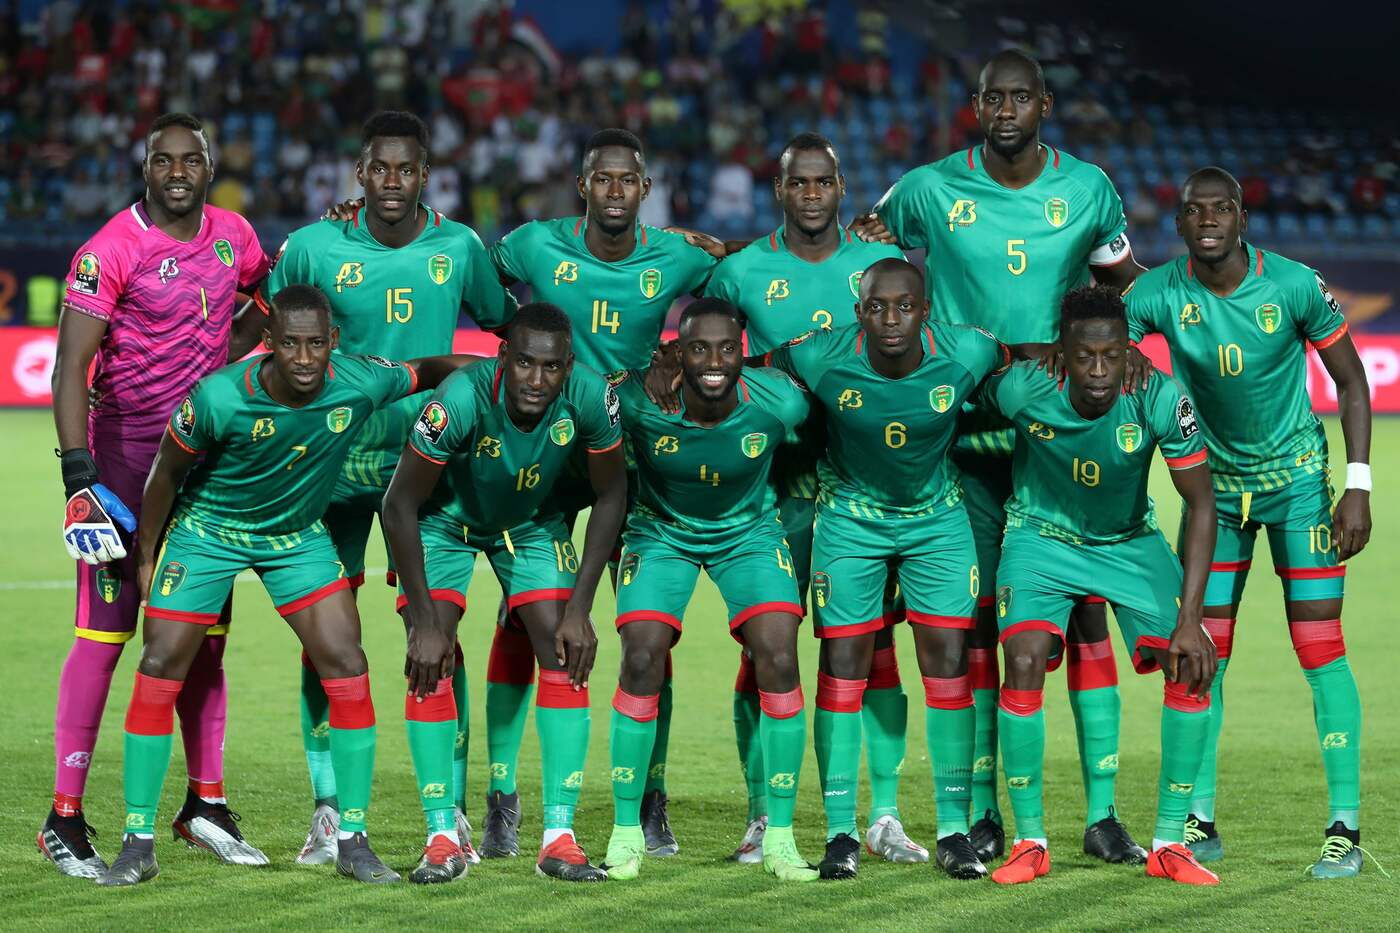 Pronostici Ligue 1 Mauritania 21 marzo: le quote del torneo